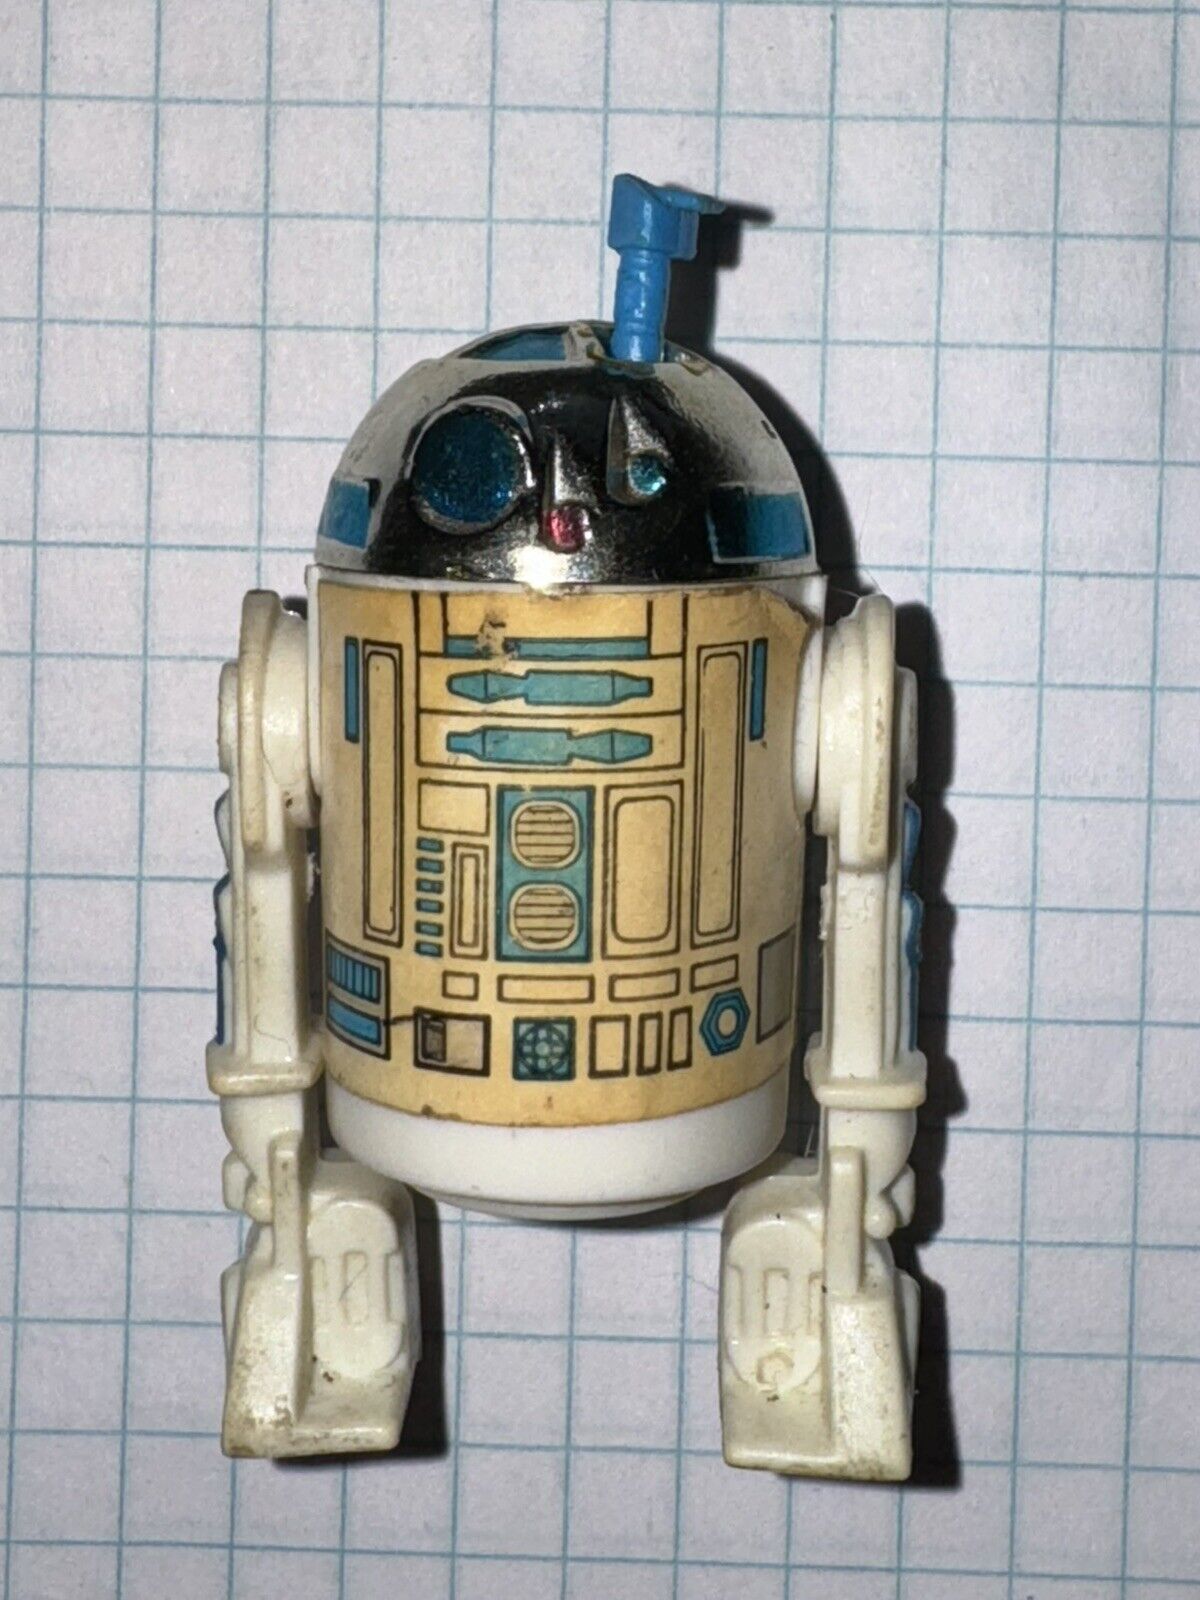 Star Wars vintage action figures: R2-D2 (sensorscope) 1977 Kenner Hong-Kong